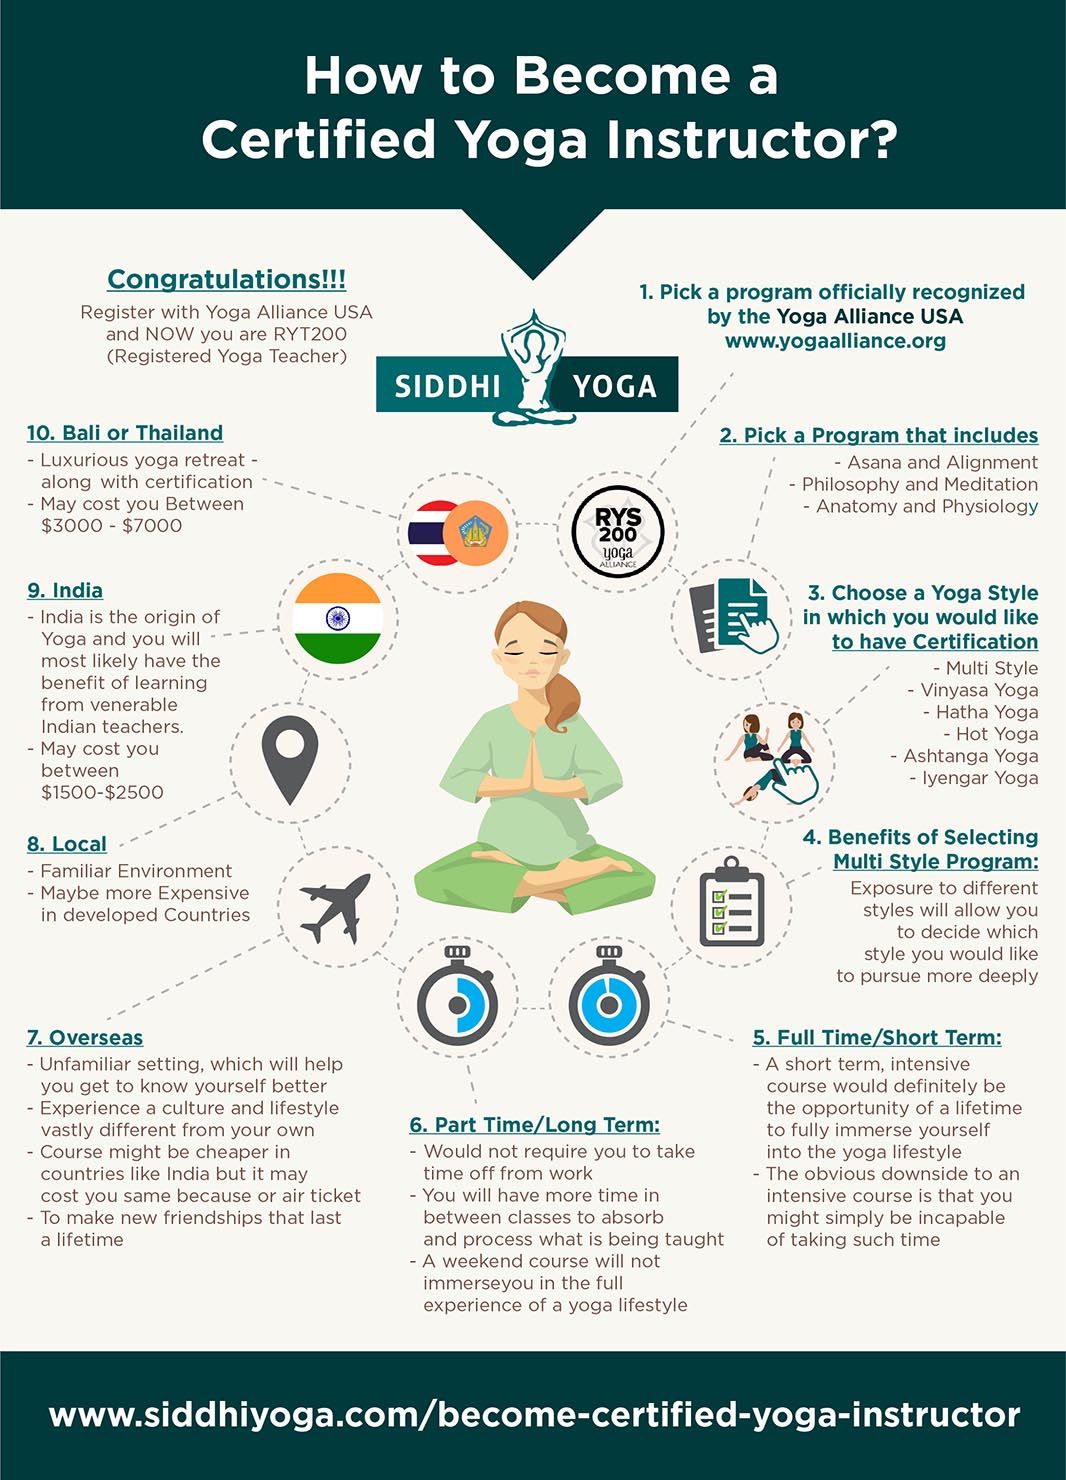 Como se tornar um instrutor certificado de Yoga